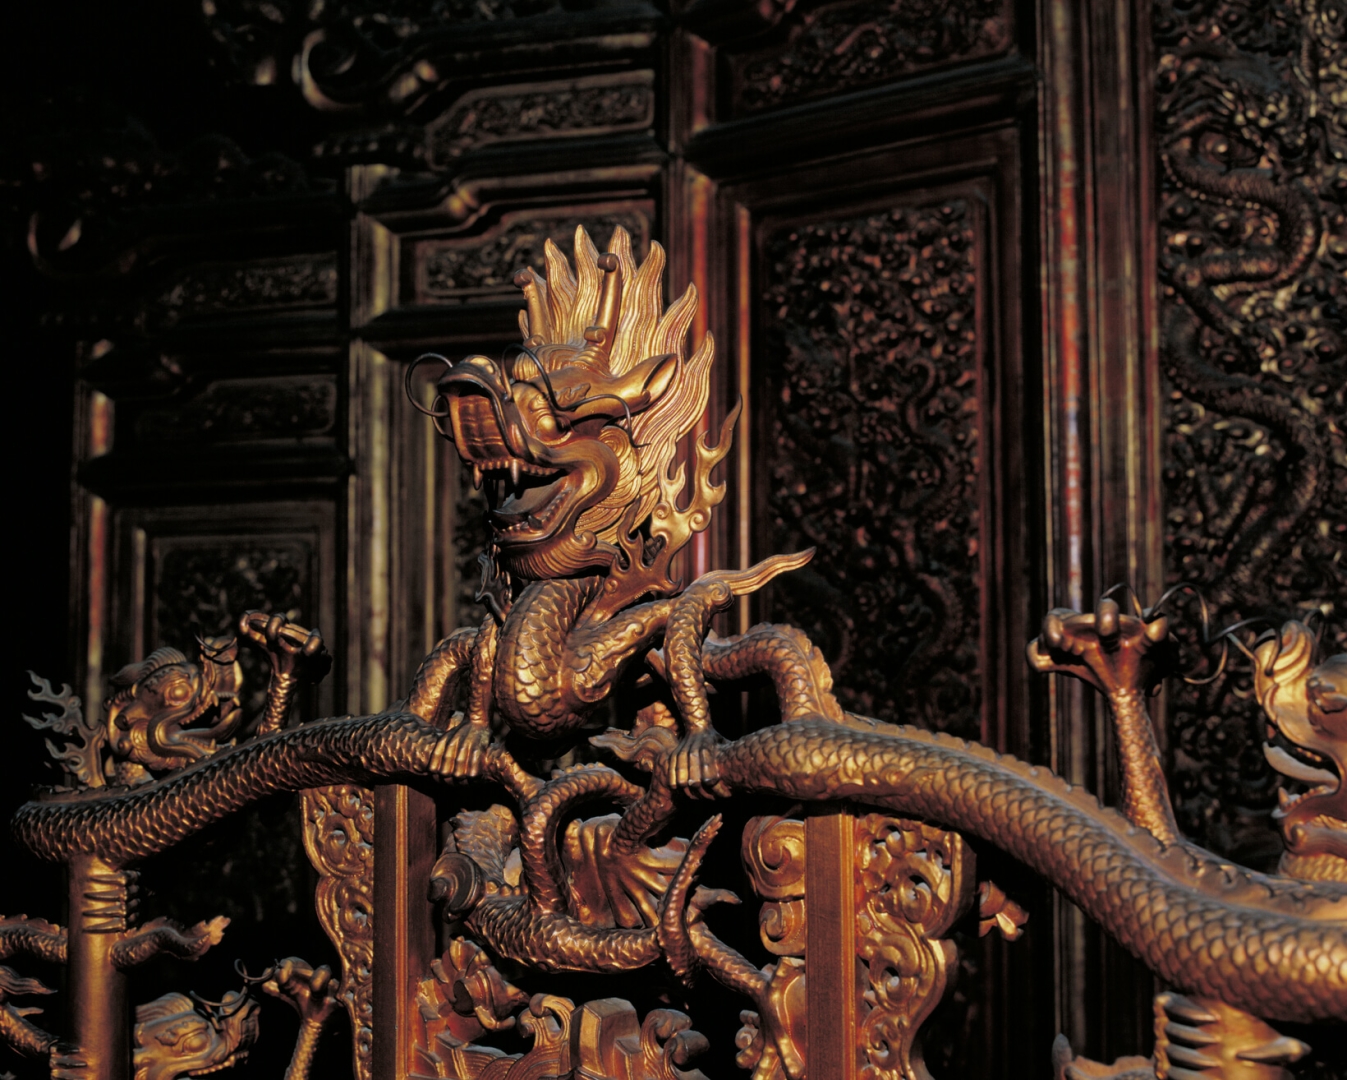 Cabeza de dragón tallada <br />
en el trono del Salón de la <br />
Armonía Suprema